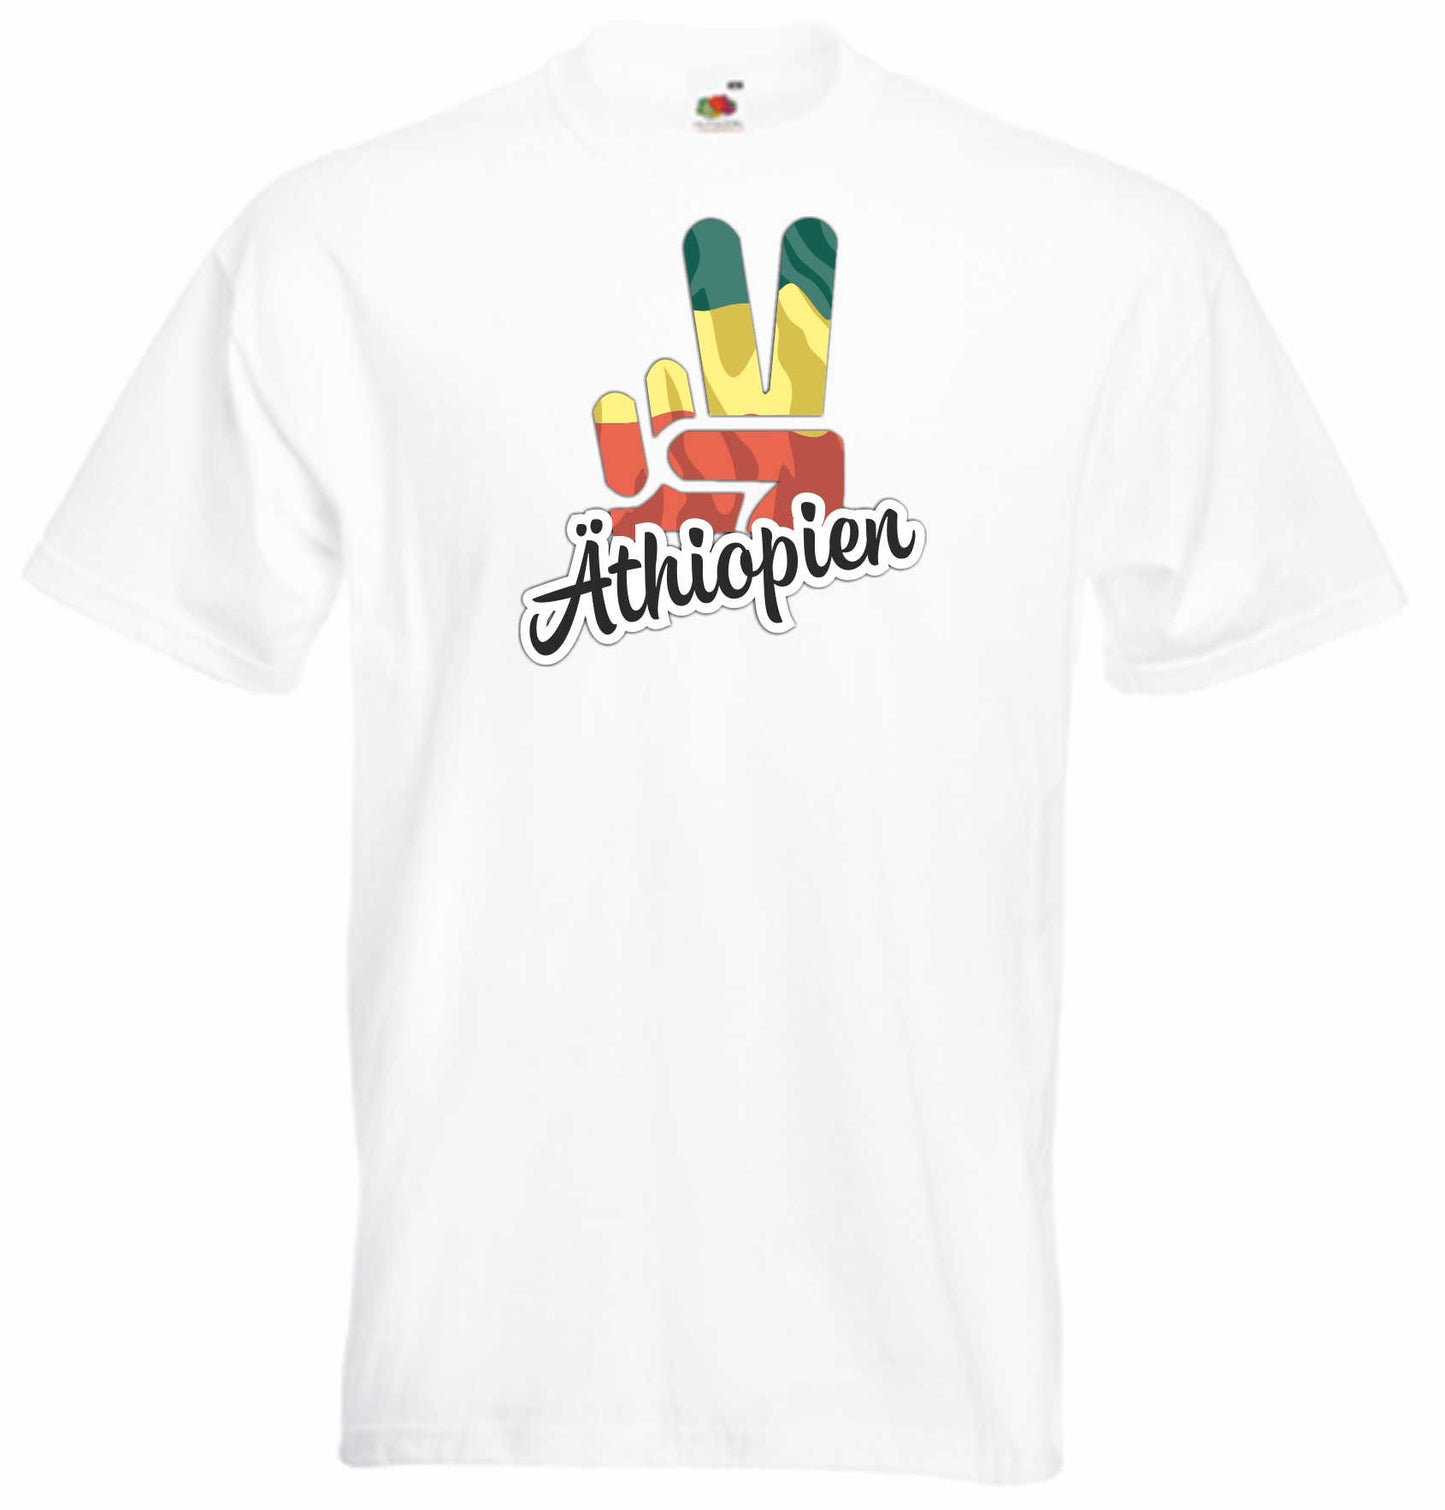 T-Shirt Herren - Victory - Flagge / Fahne - Äthiopien - Sieg